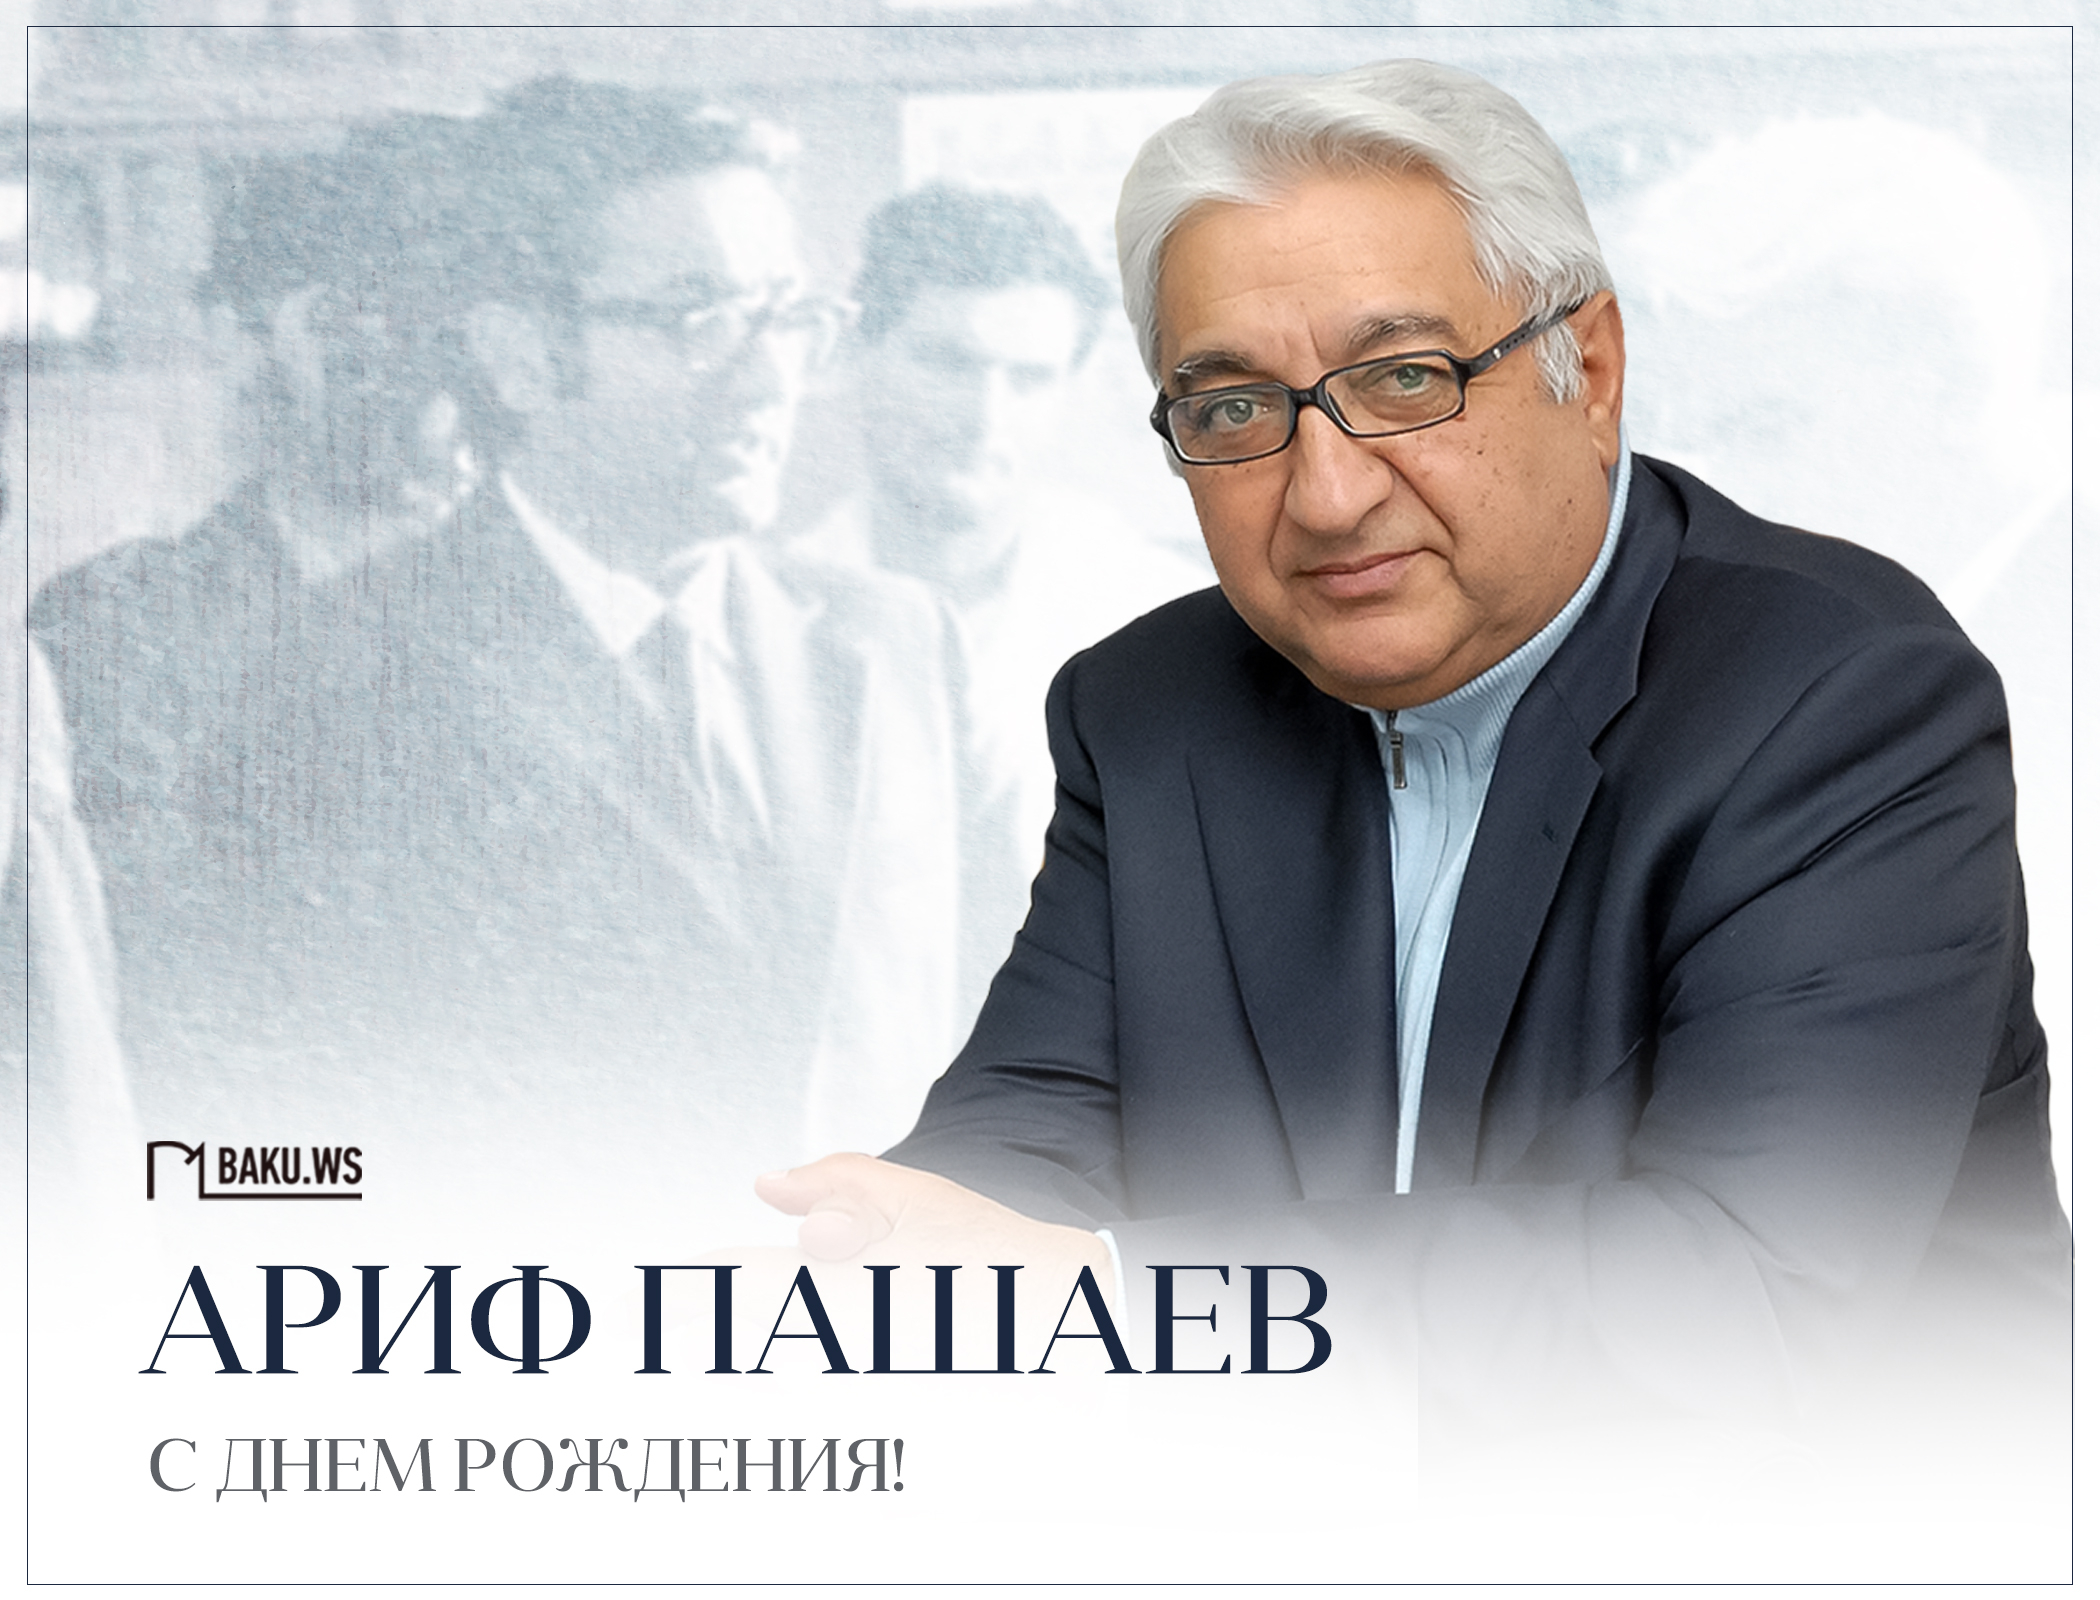 Сегодня день рождения академика Арифа Пашаева